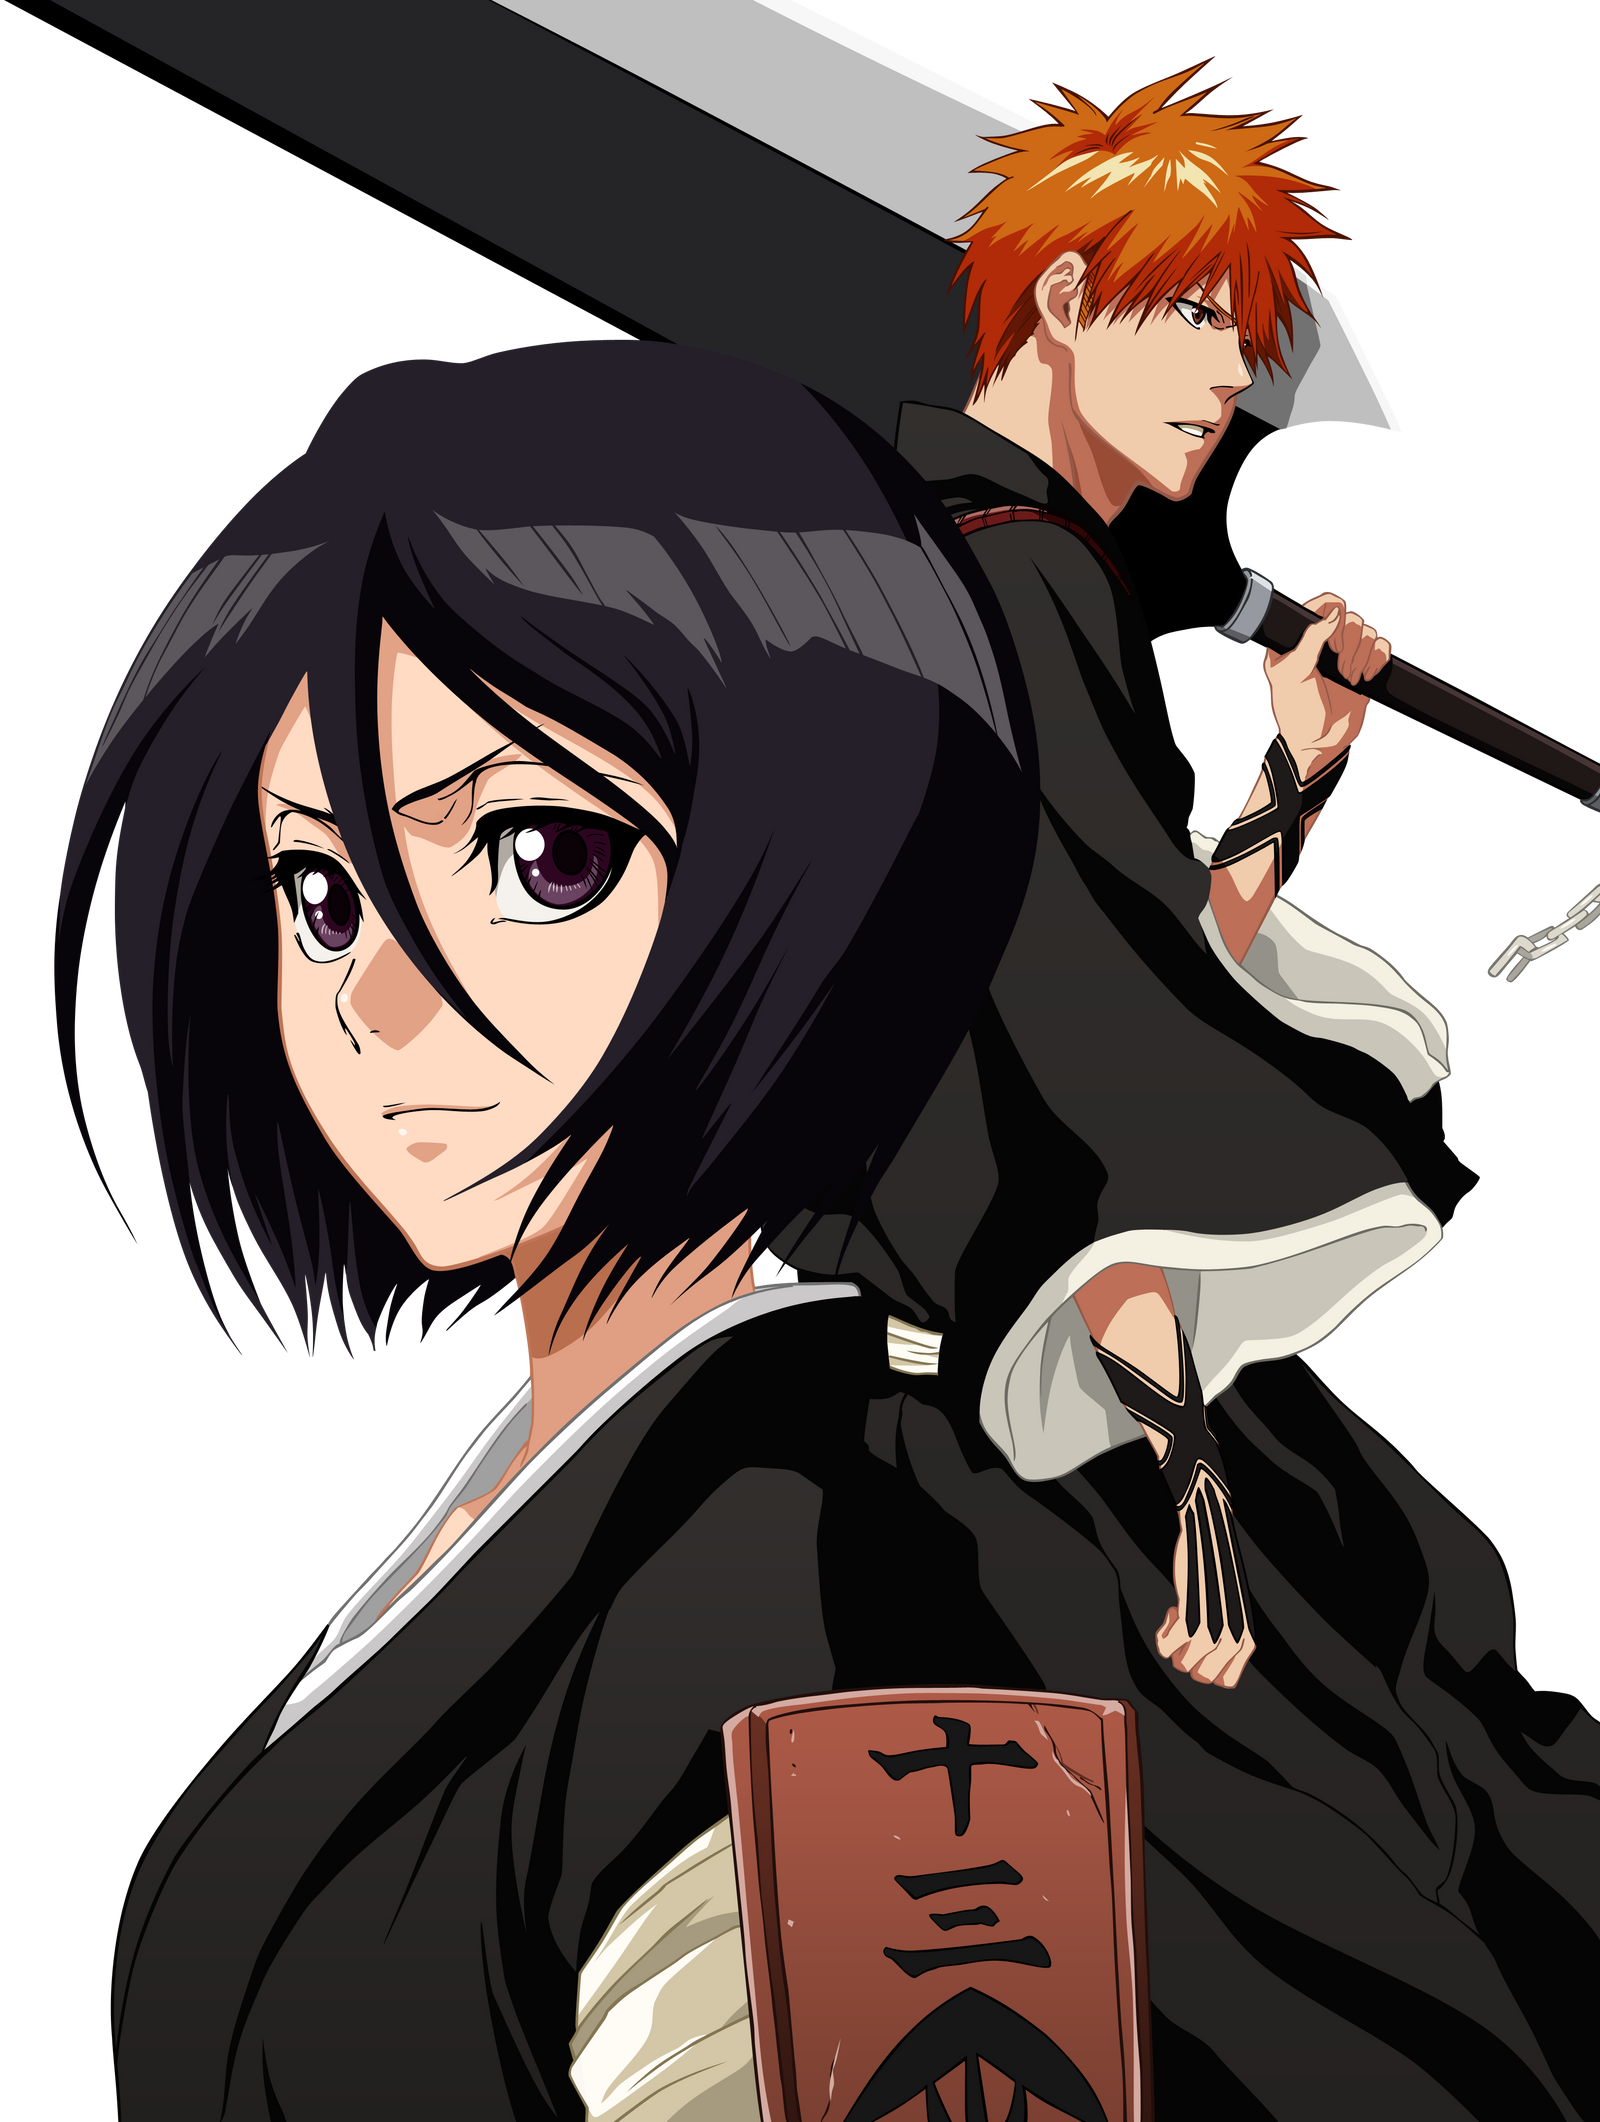 Rukia and Ichigo by Narusailor on DeviantArt